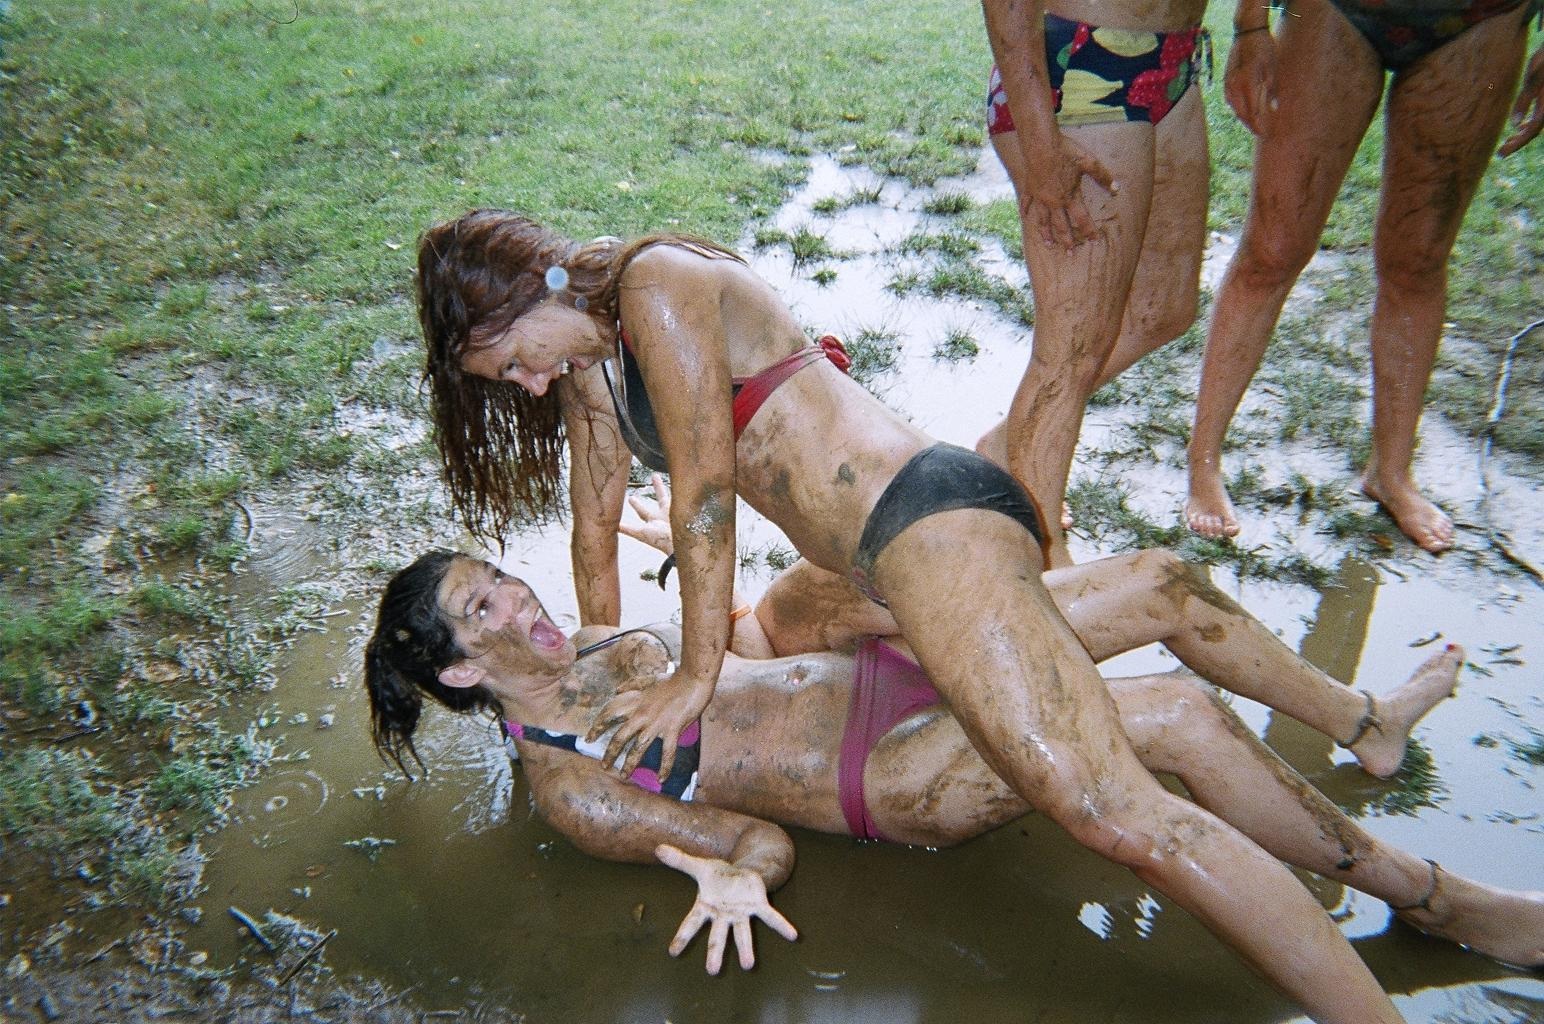 Sexy mud wrestling - 🧡 Secret Garden Party 2016 Mud Wrestling.